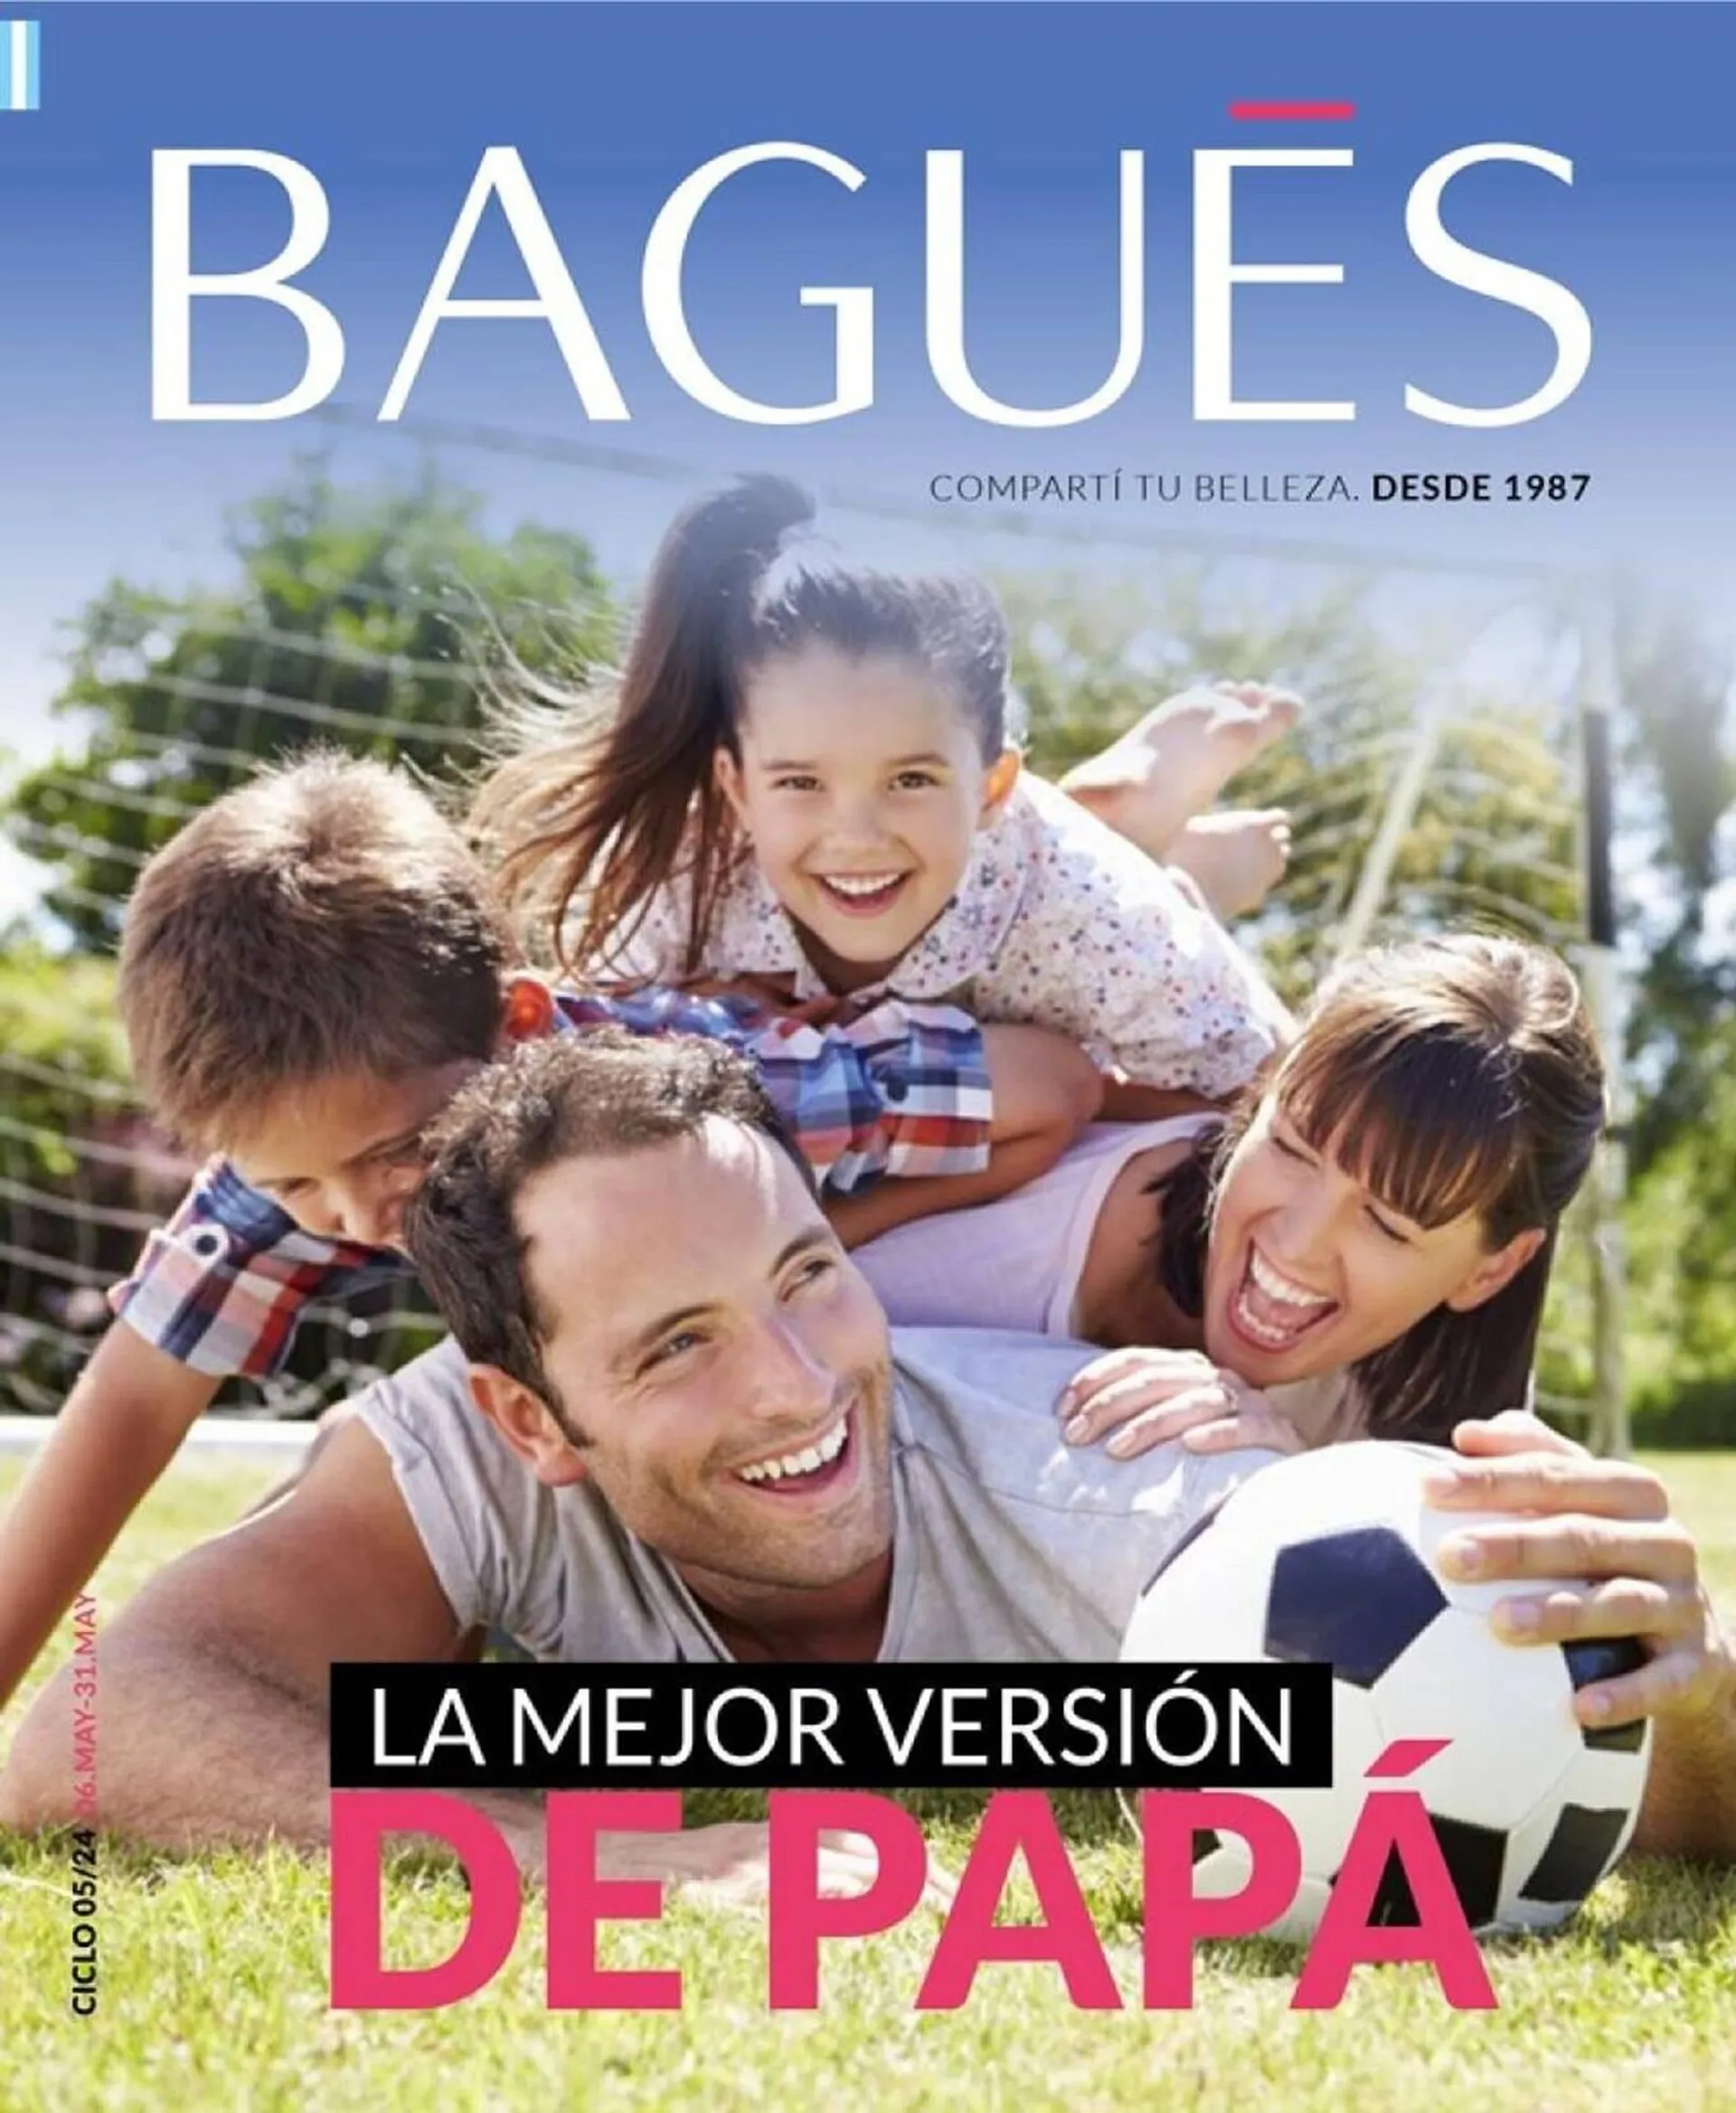 Catálogo Bagués - 1